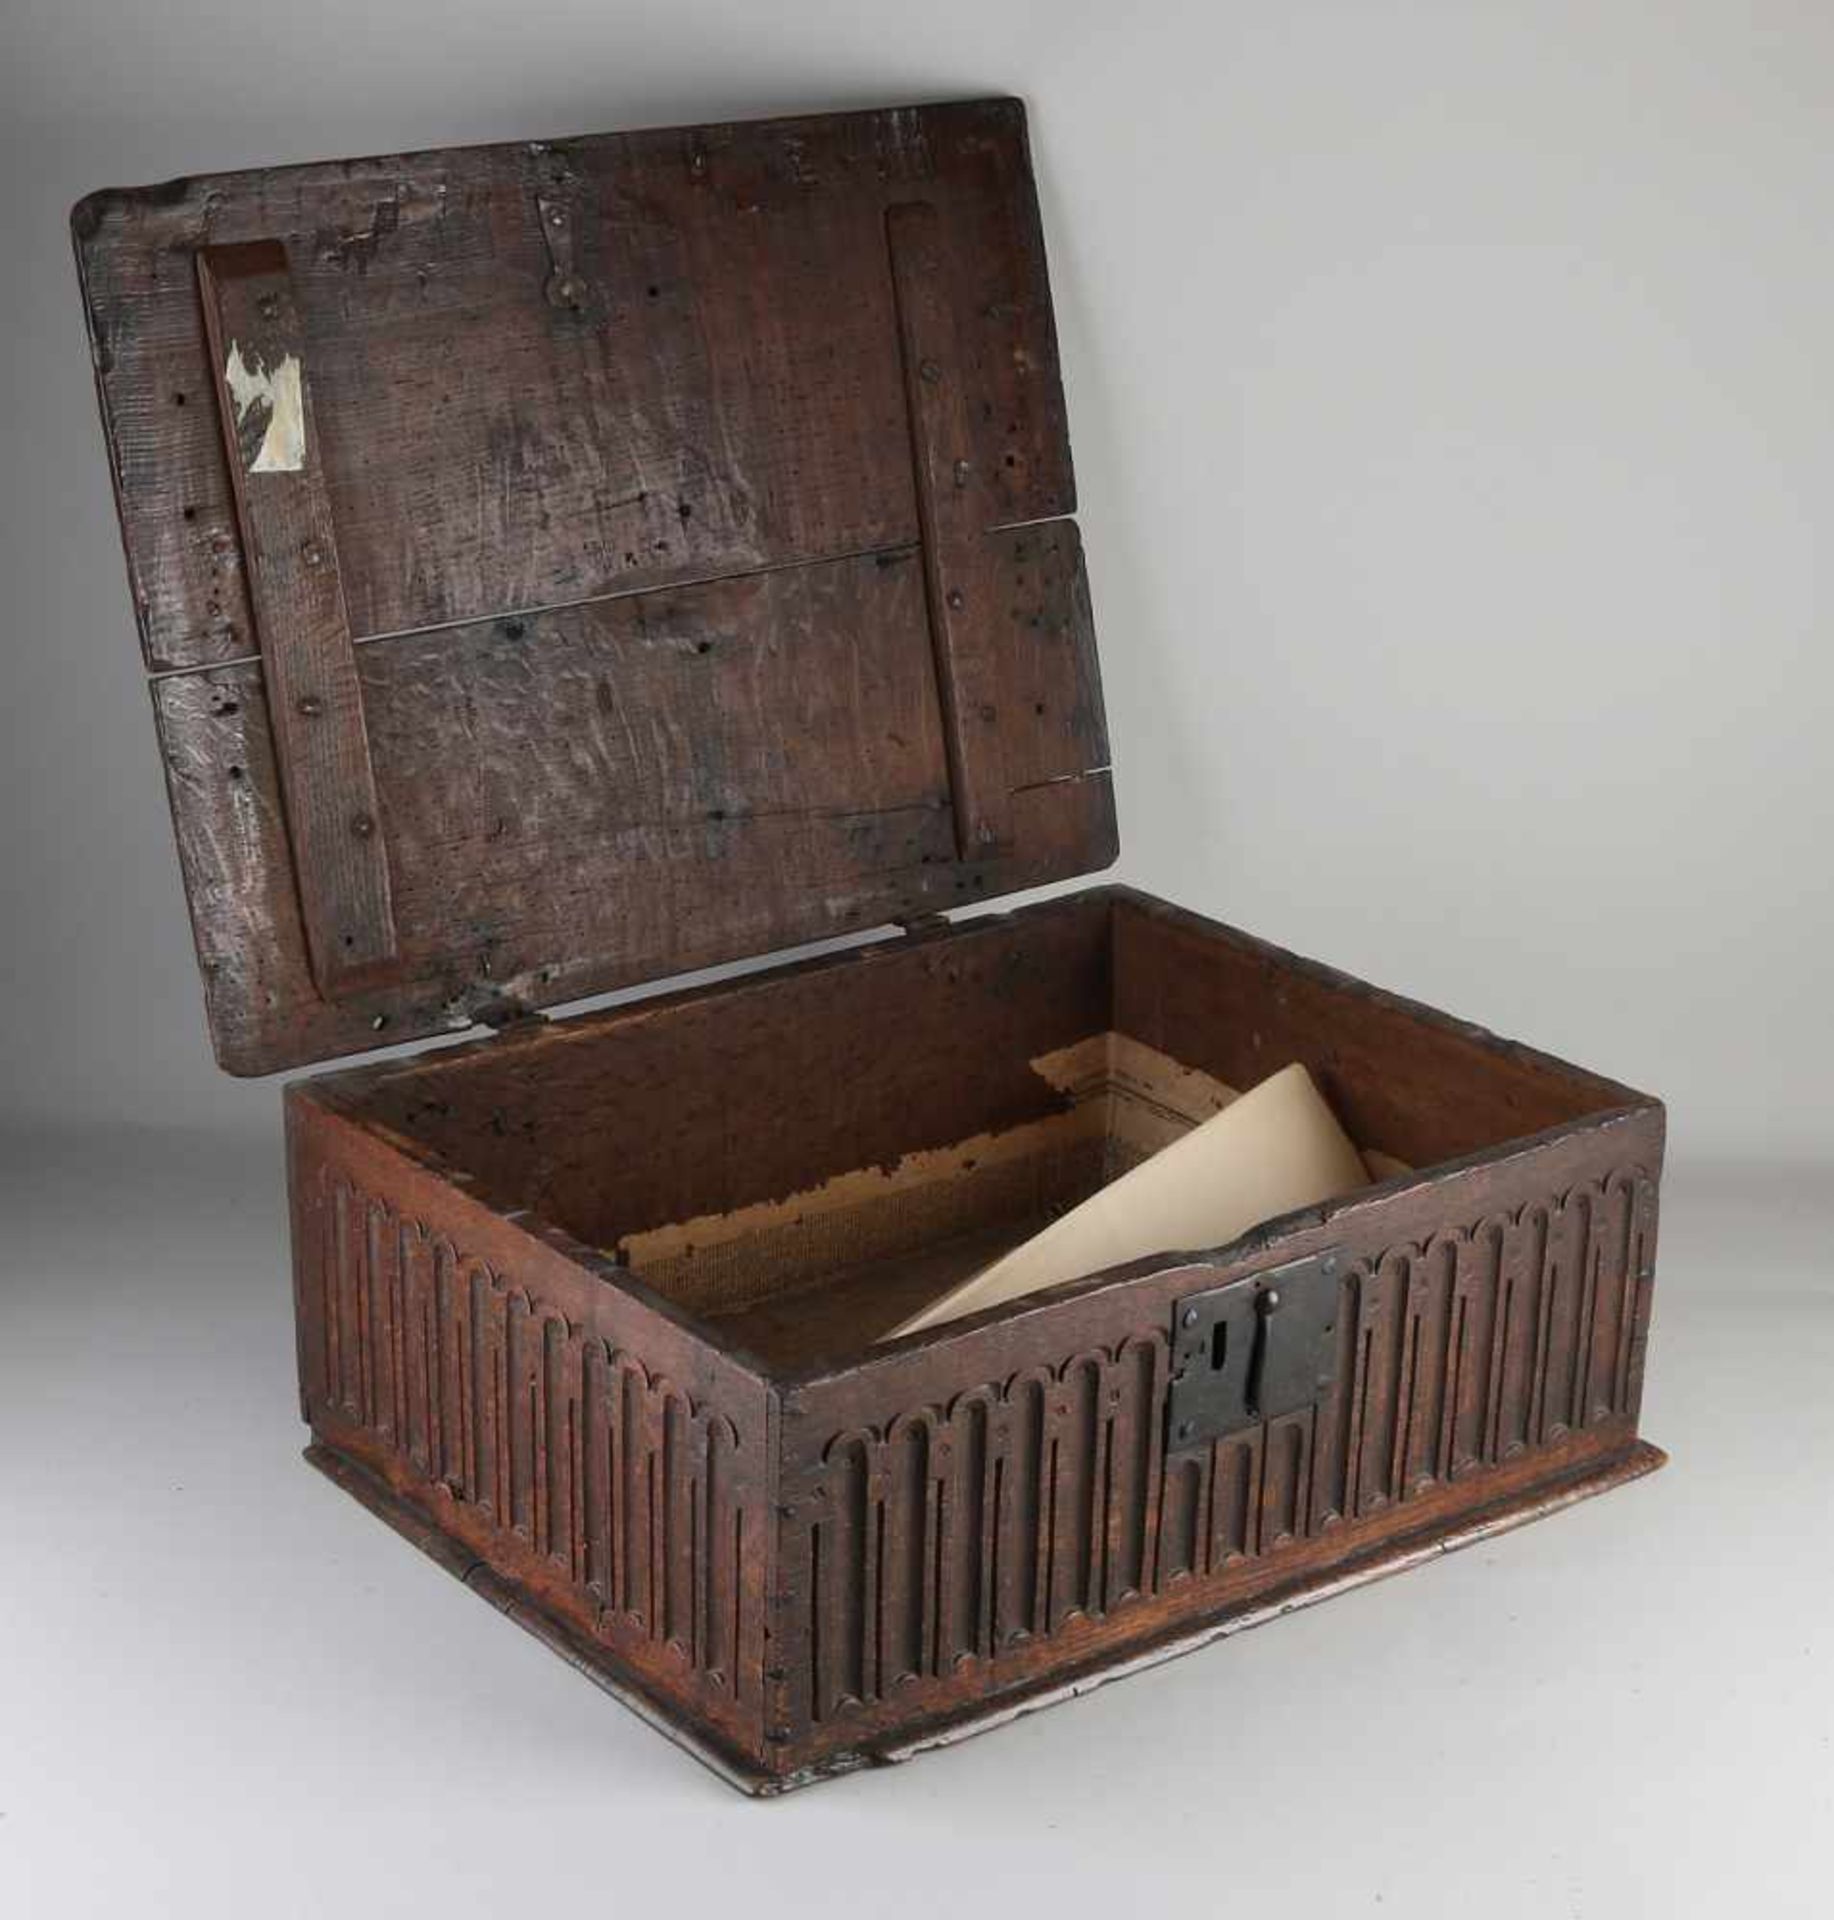 Seltene gotische Bibelbox aus Eichenholz mit originalem Schloss + Beschlägen. Ca. 1650. Abmessunge - Bild 2 aus 2